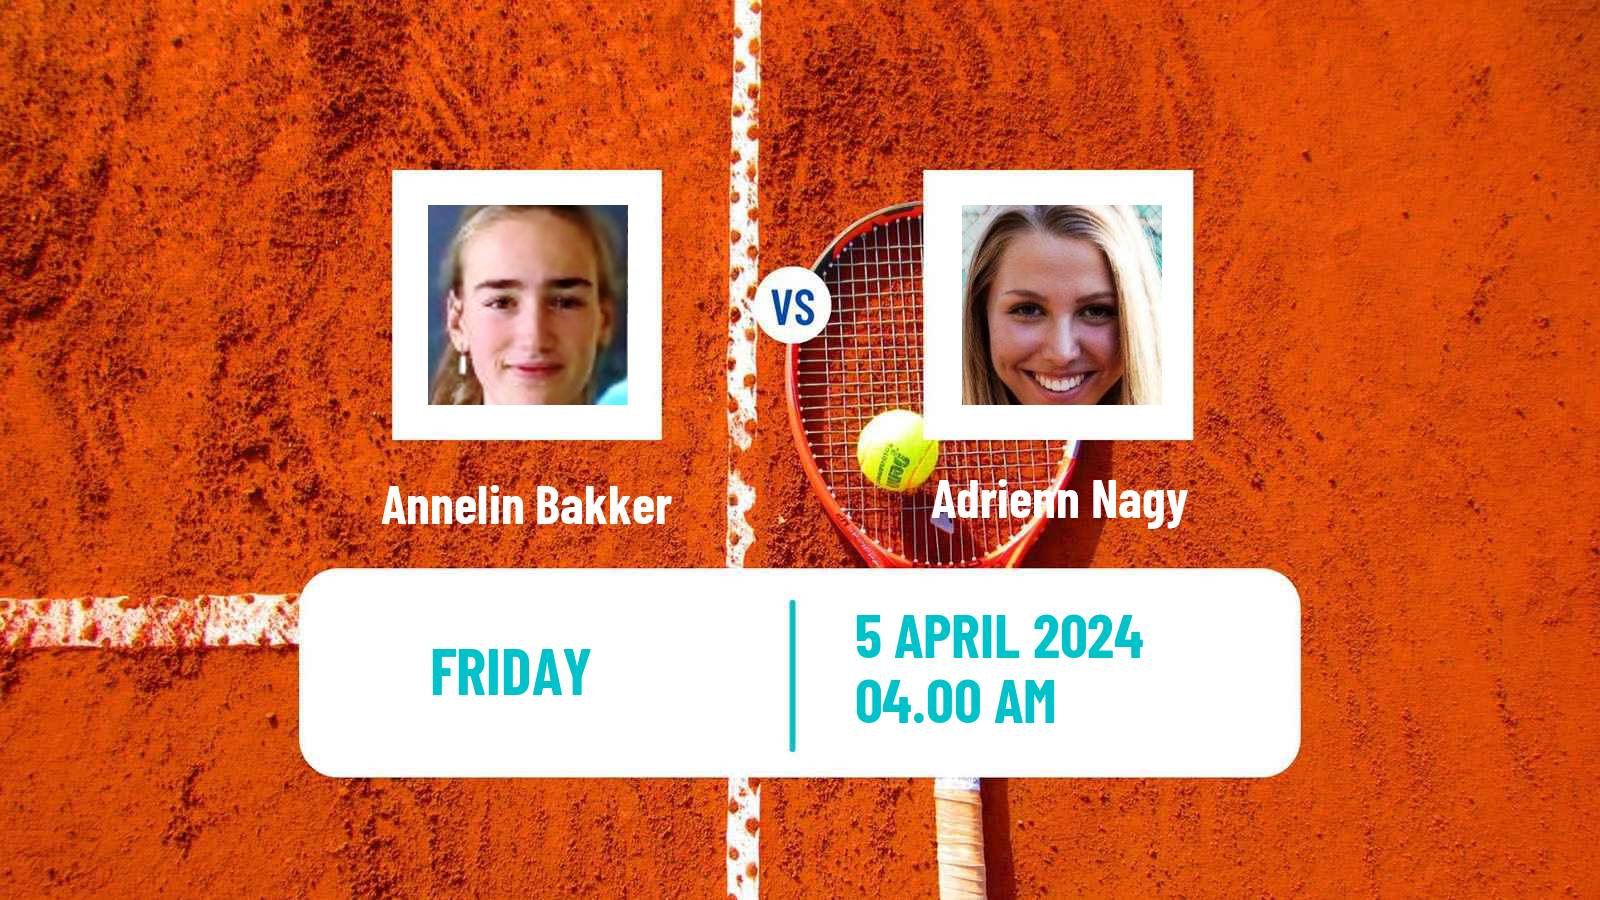 Tennis ITF W15 Telde Women Annelin Bakker - Adrienn Nagy